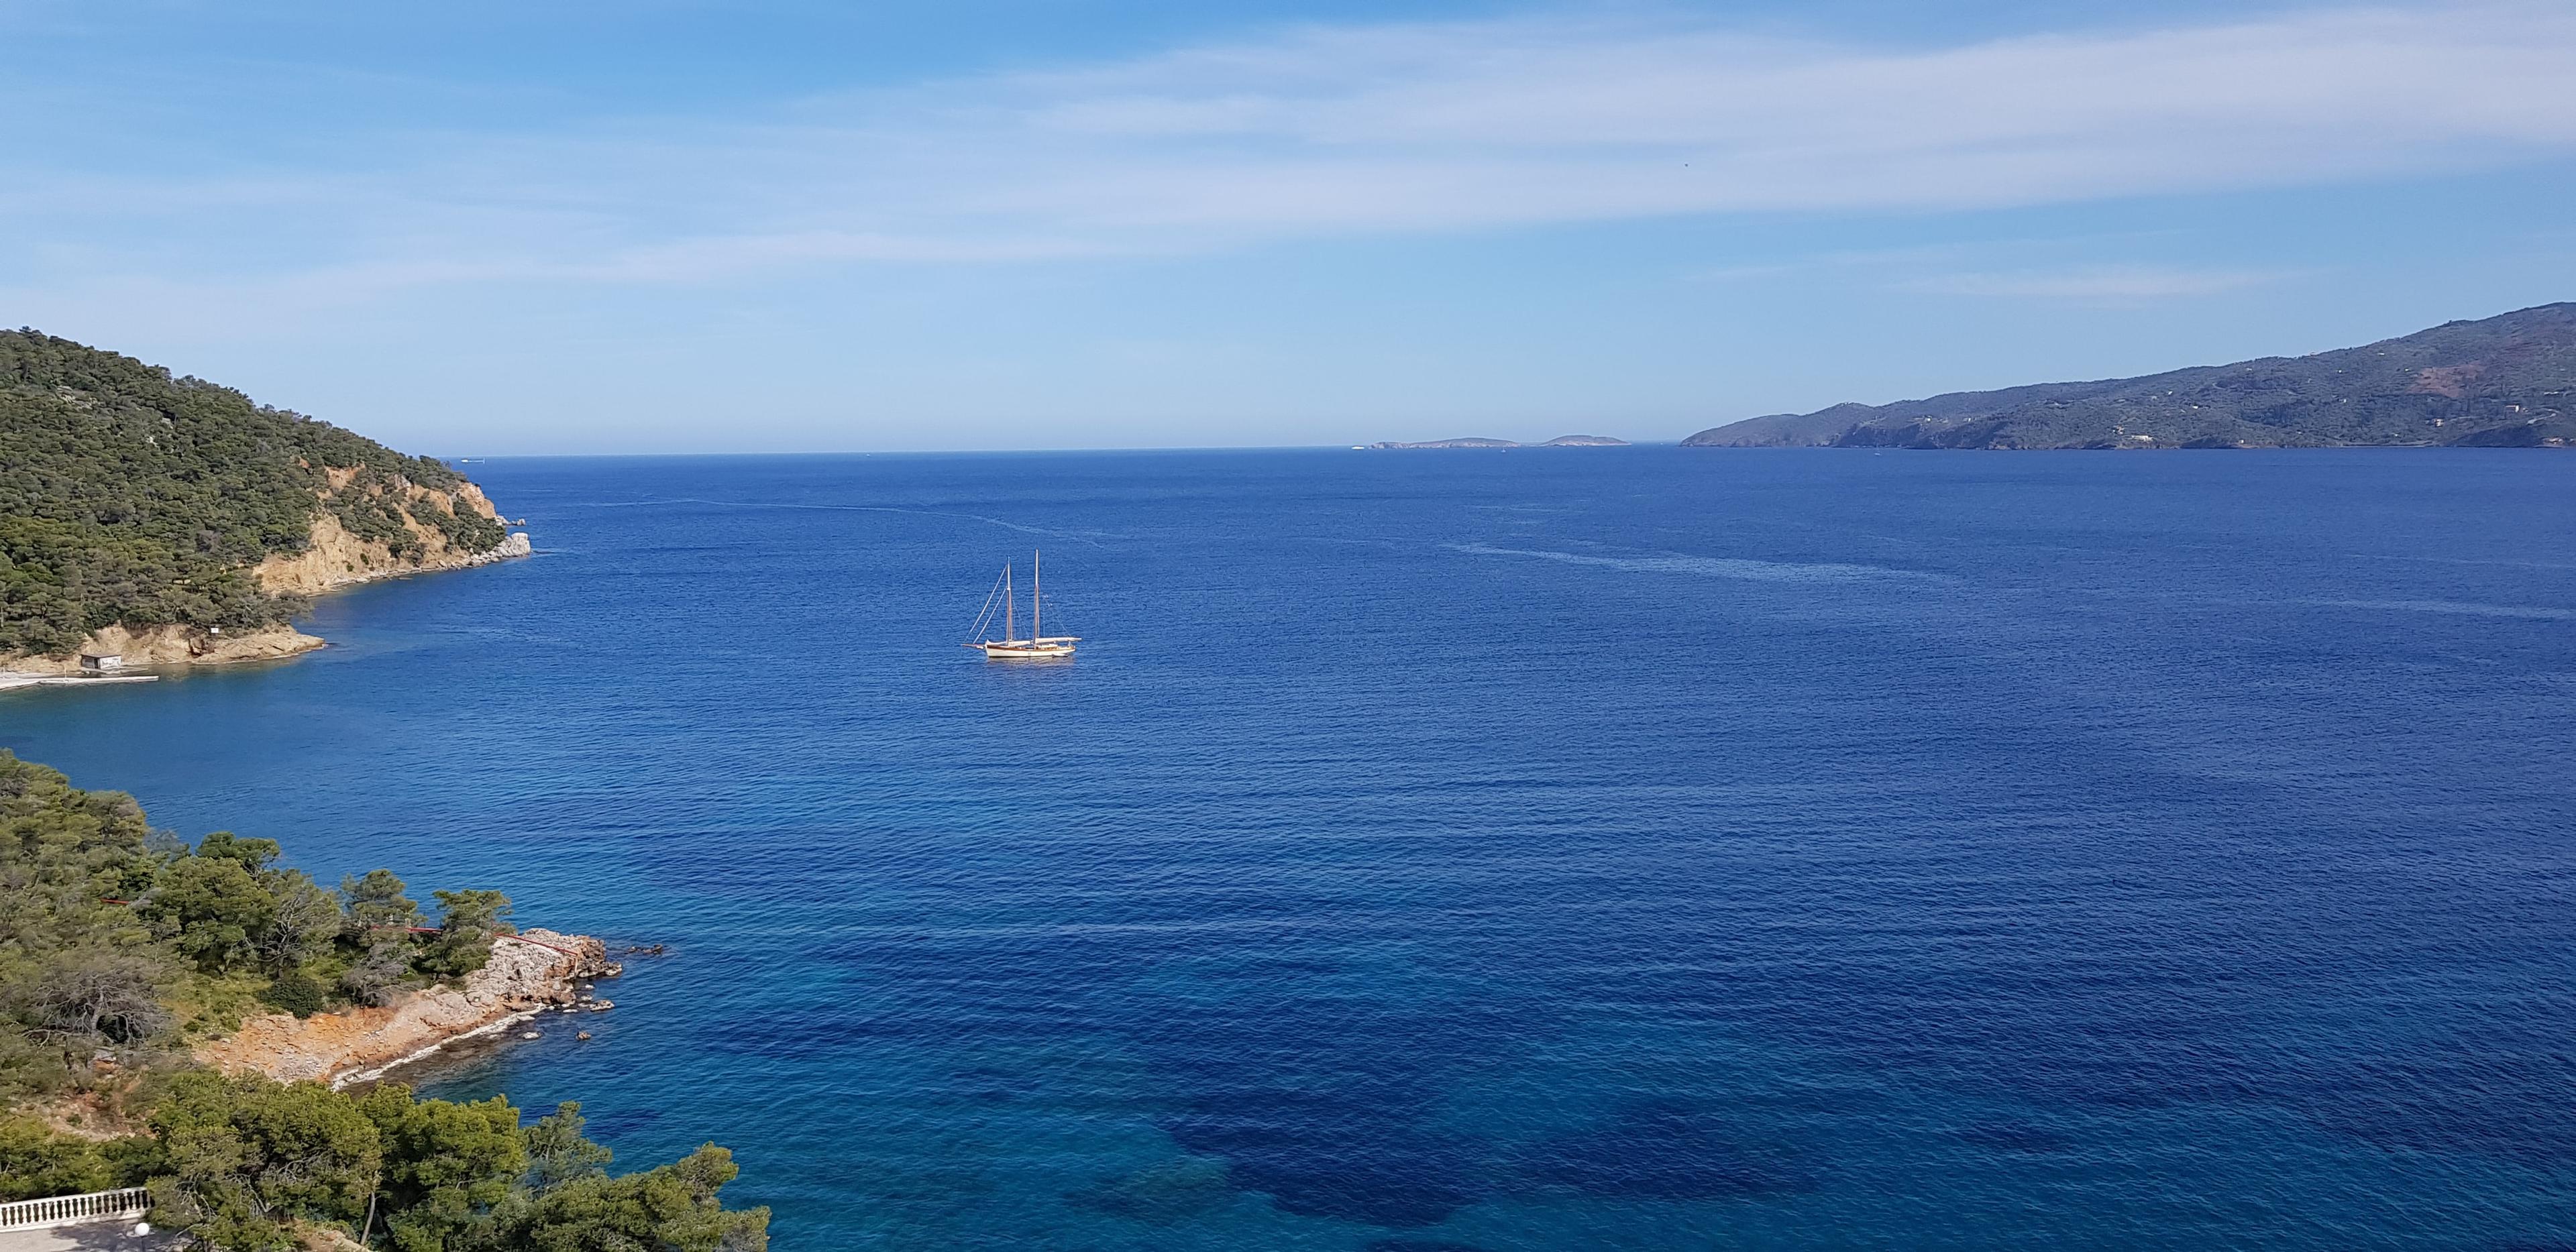 Blick auf felsige Küsten vor Poros, umgeben vom blauen Meer und einem Segelboot